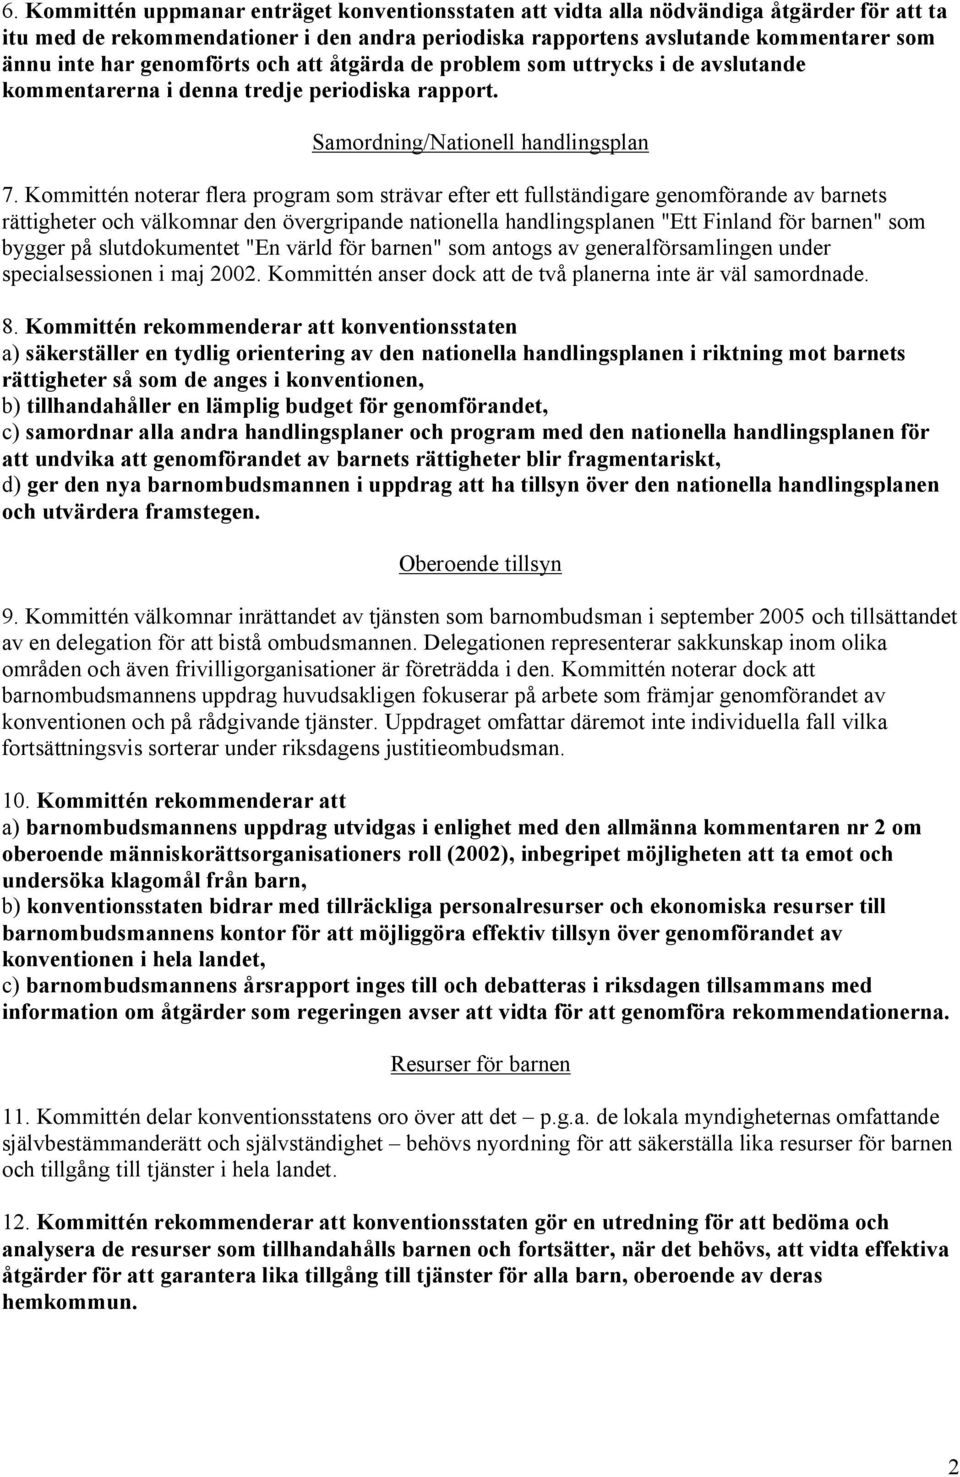 Kommittén noterar flera program som strävar efter ett fullständigare genomförande av barnets rättigheter och välkomnar den övergripande nationella handlingsplanen "Ett Finland för barnen" som bygger